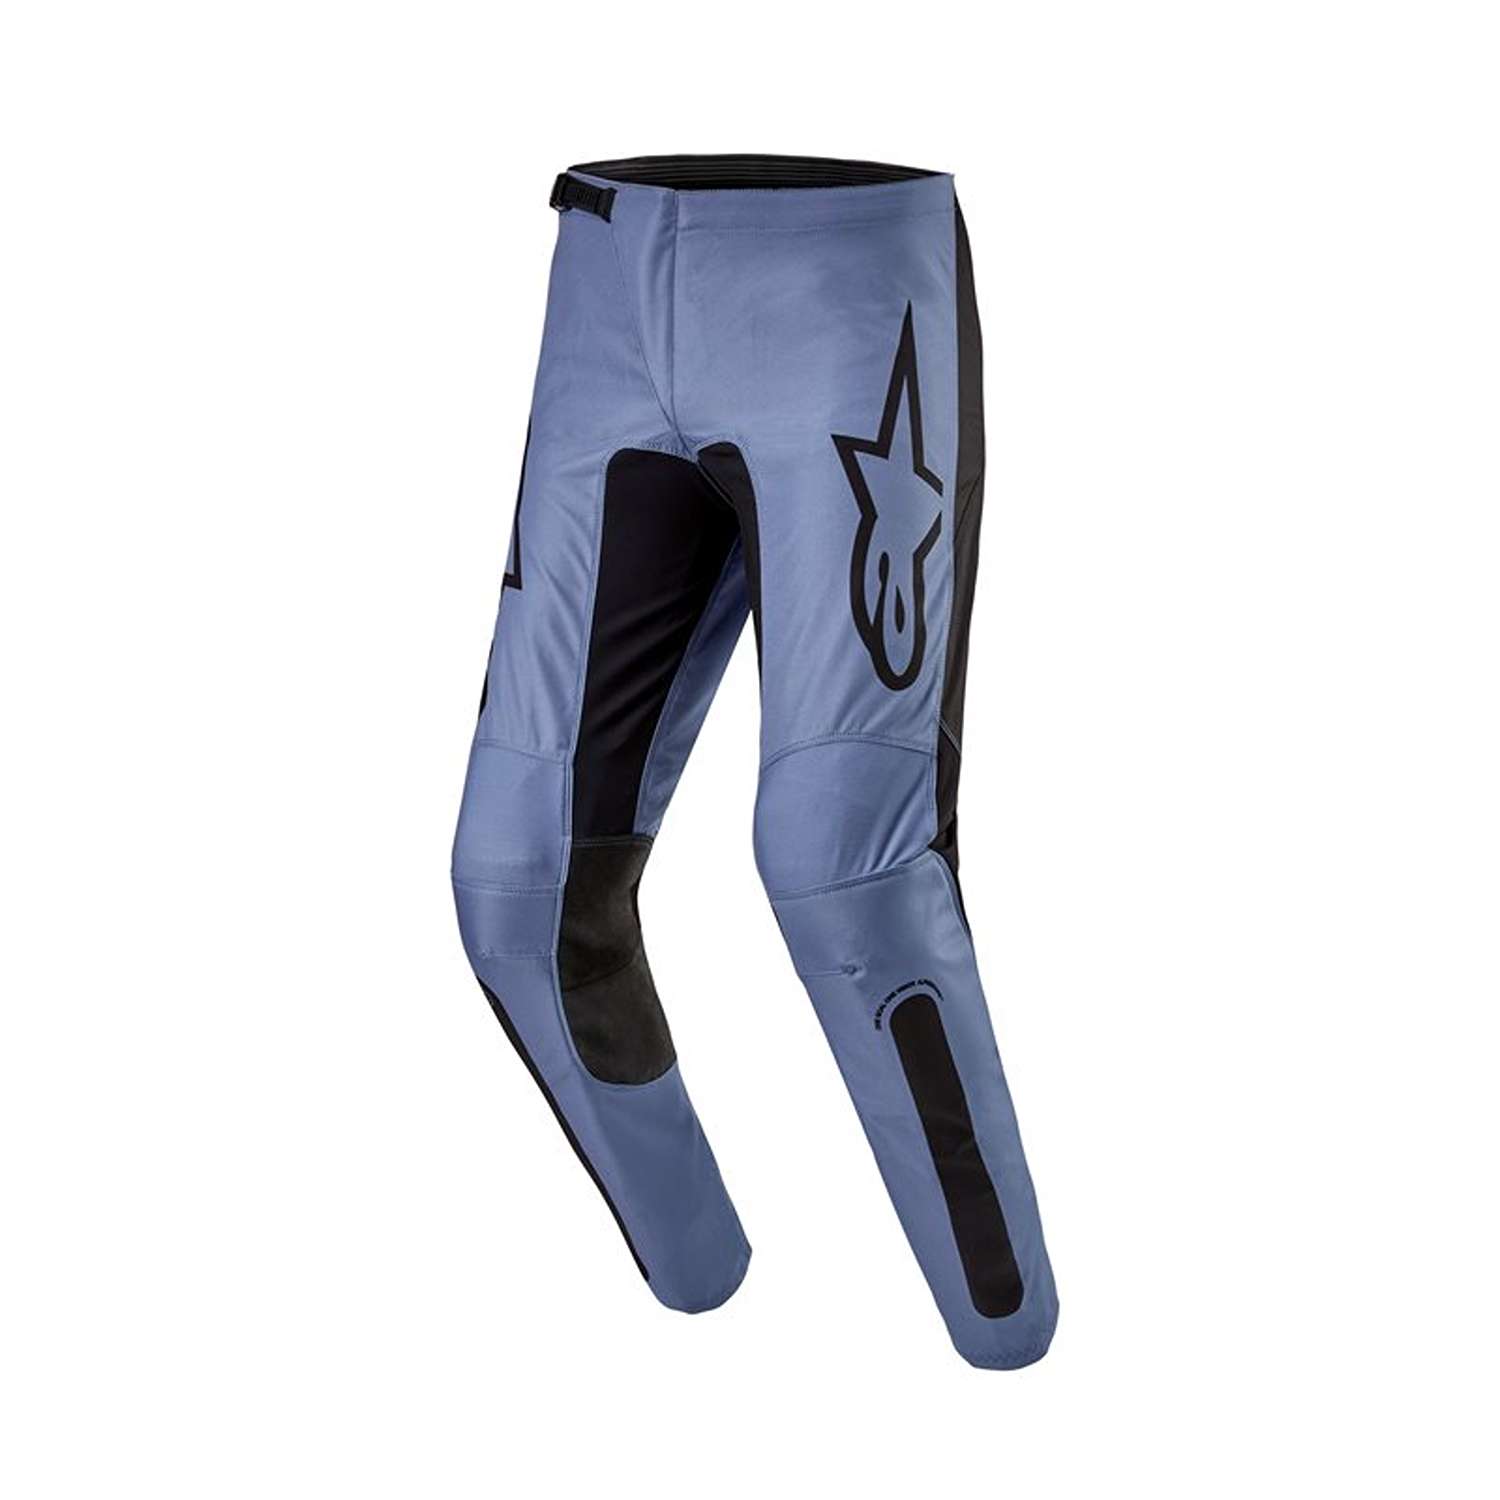 Image of EU Alpinestars Fluid Lurv Pants Light Blue Black Taille 28